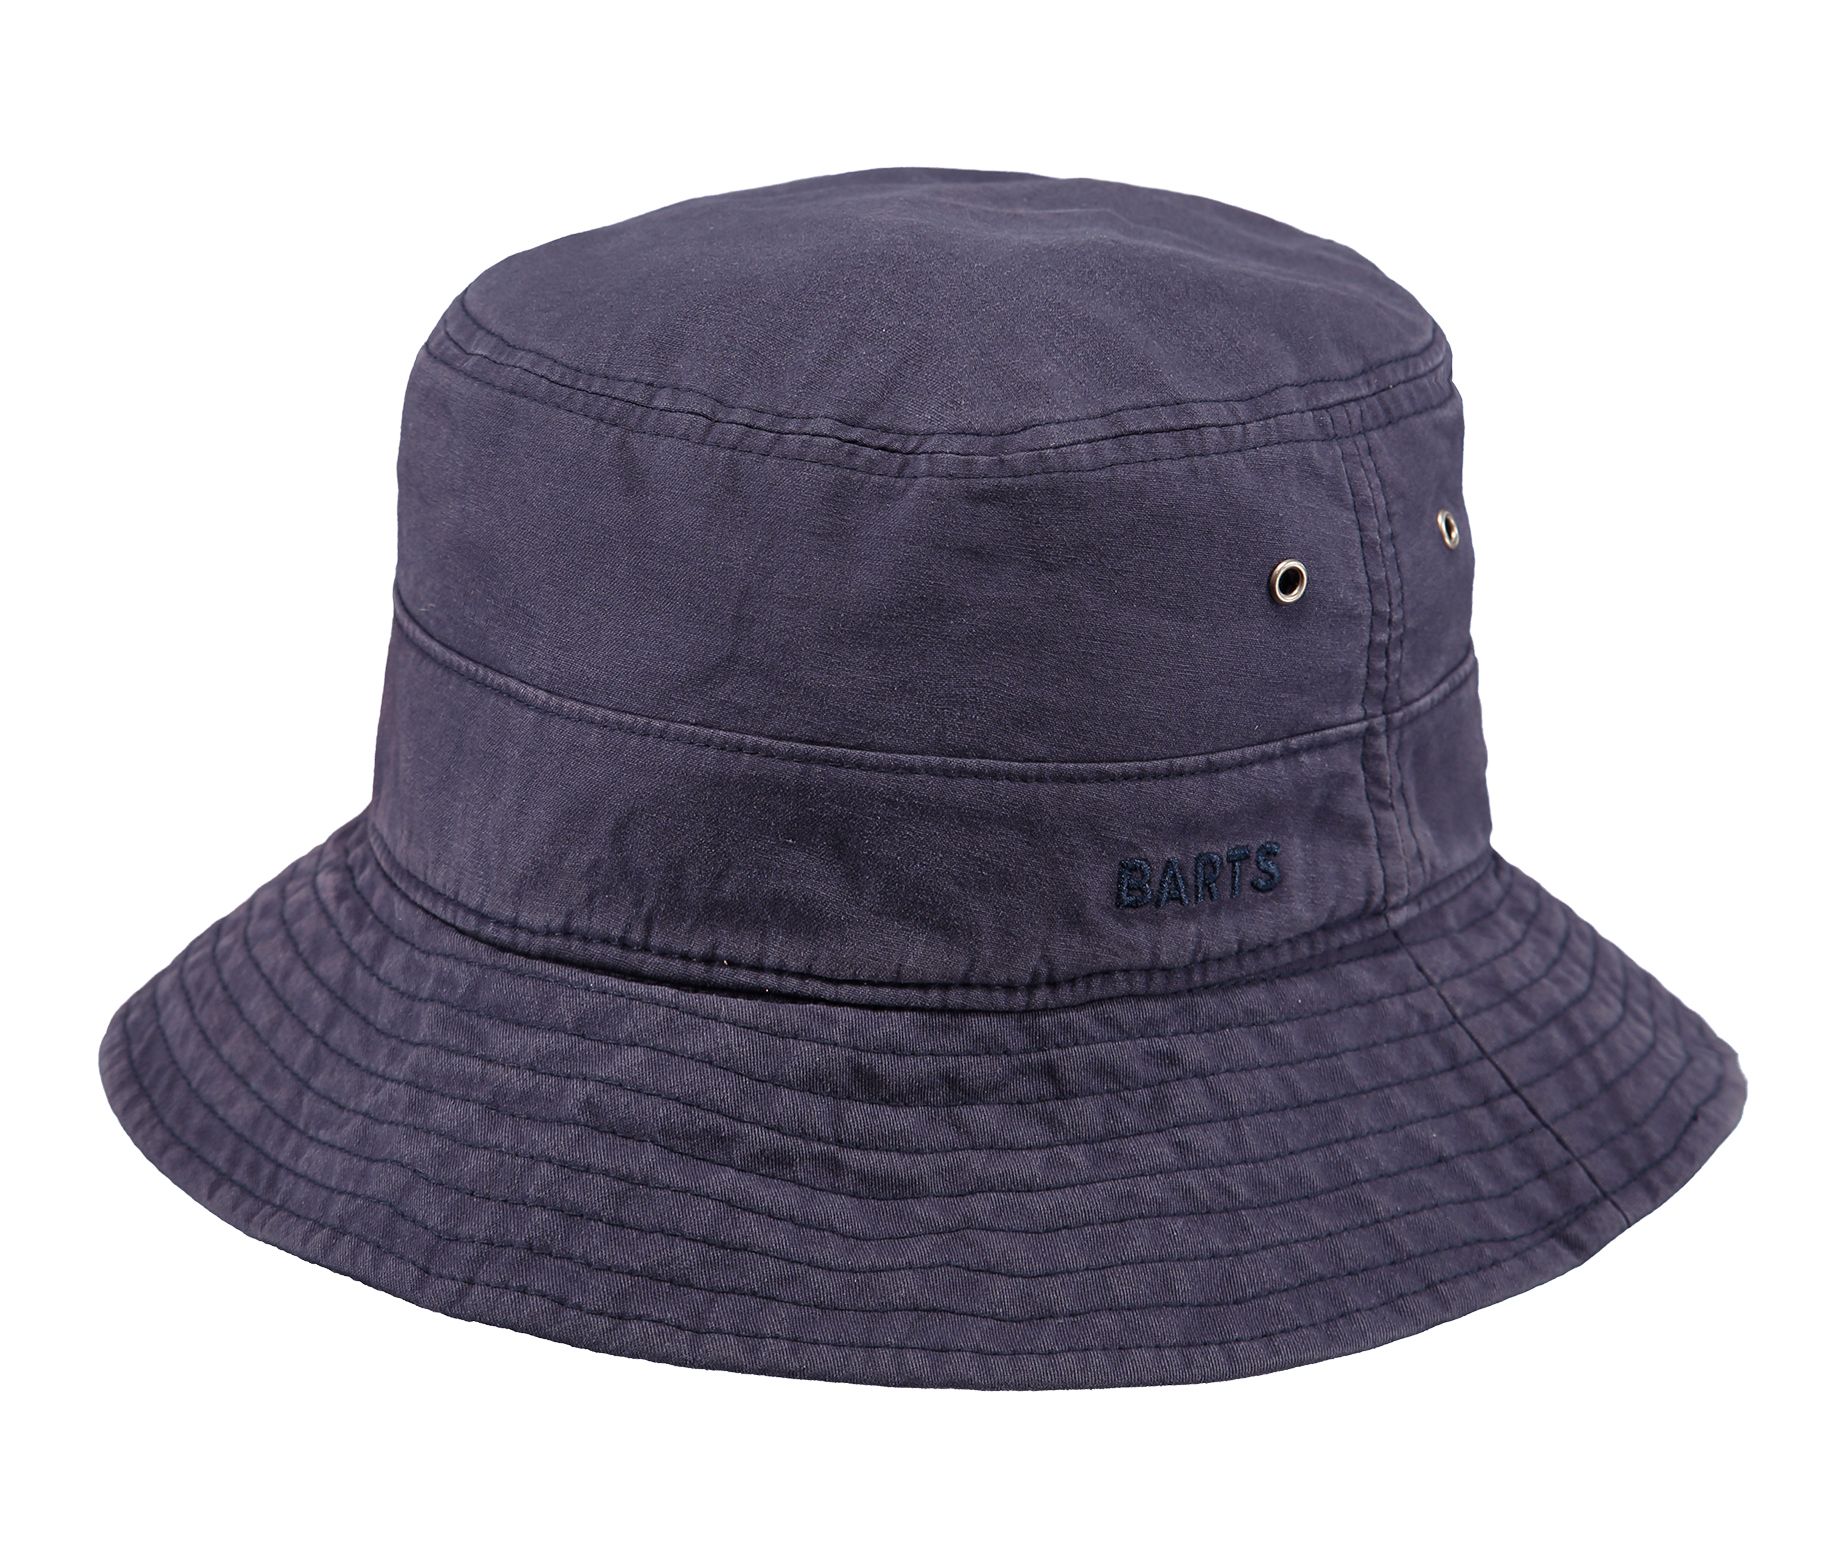 Barts - Calomba Hat